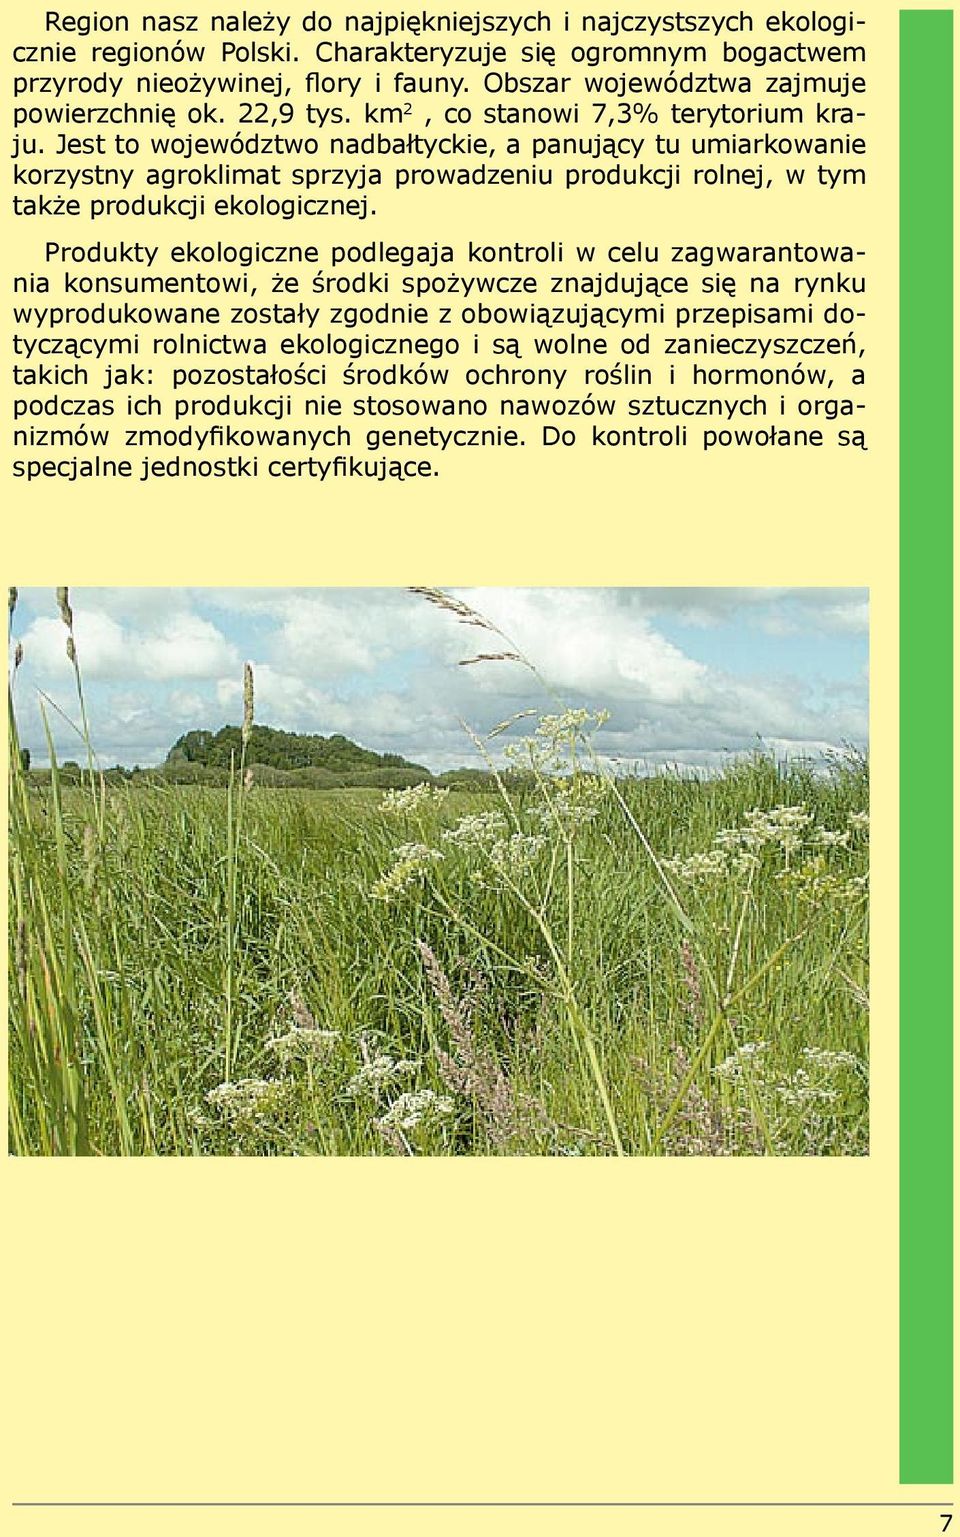 Jest to województwo nadbałtyckie, a panujący tu umiarkowanie korzystny agroklimat sprzyja prowadzeniu produkcji rolnej, w tym także produkcji ekologicznej.